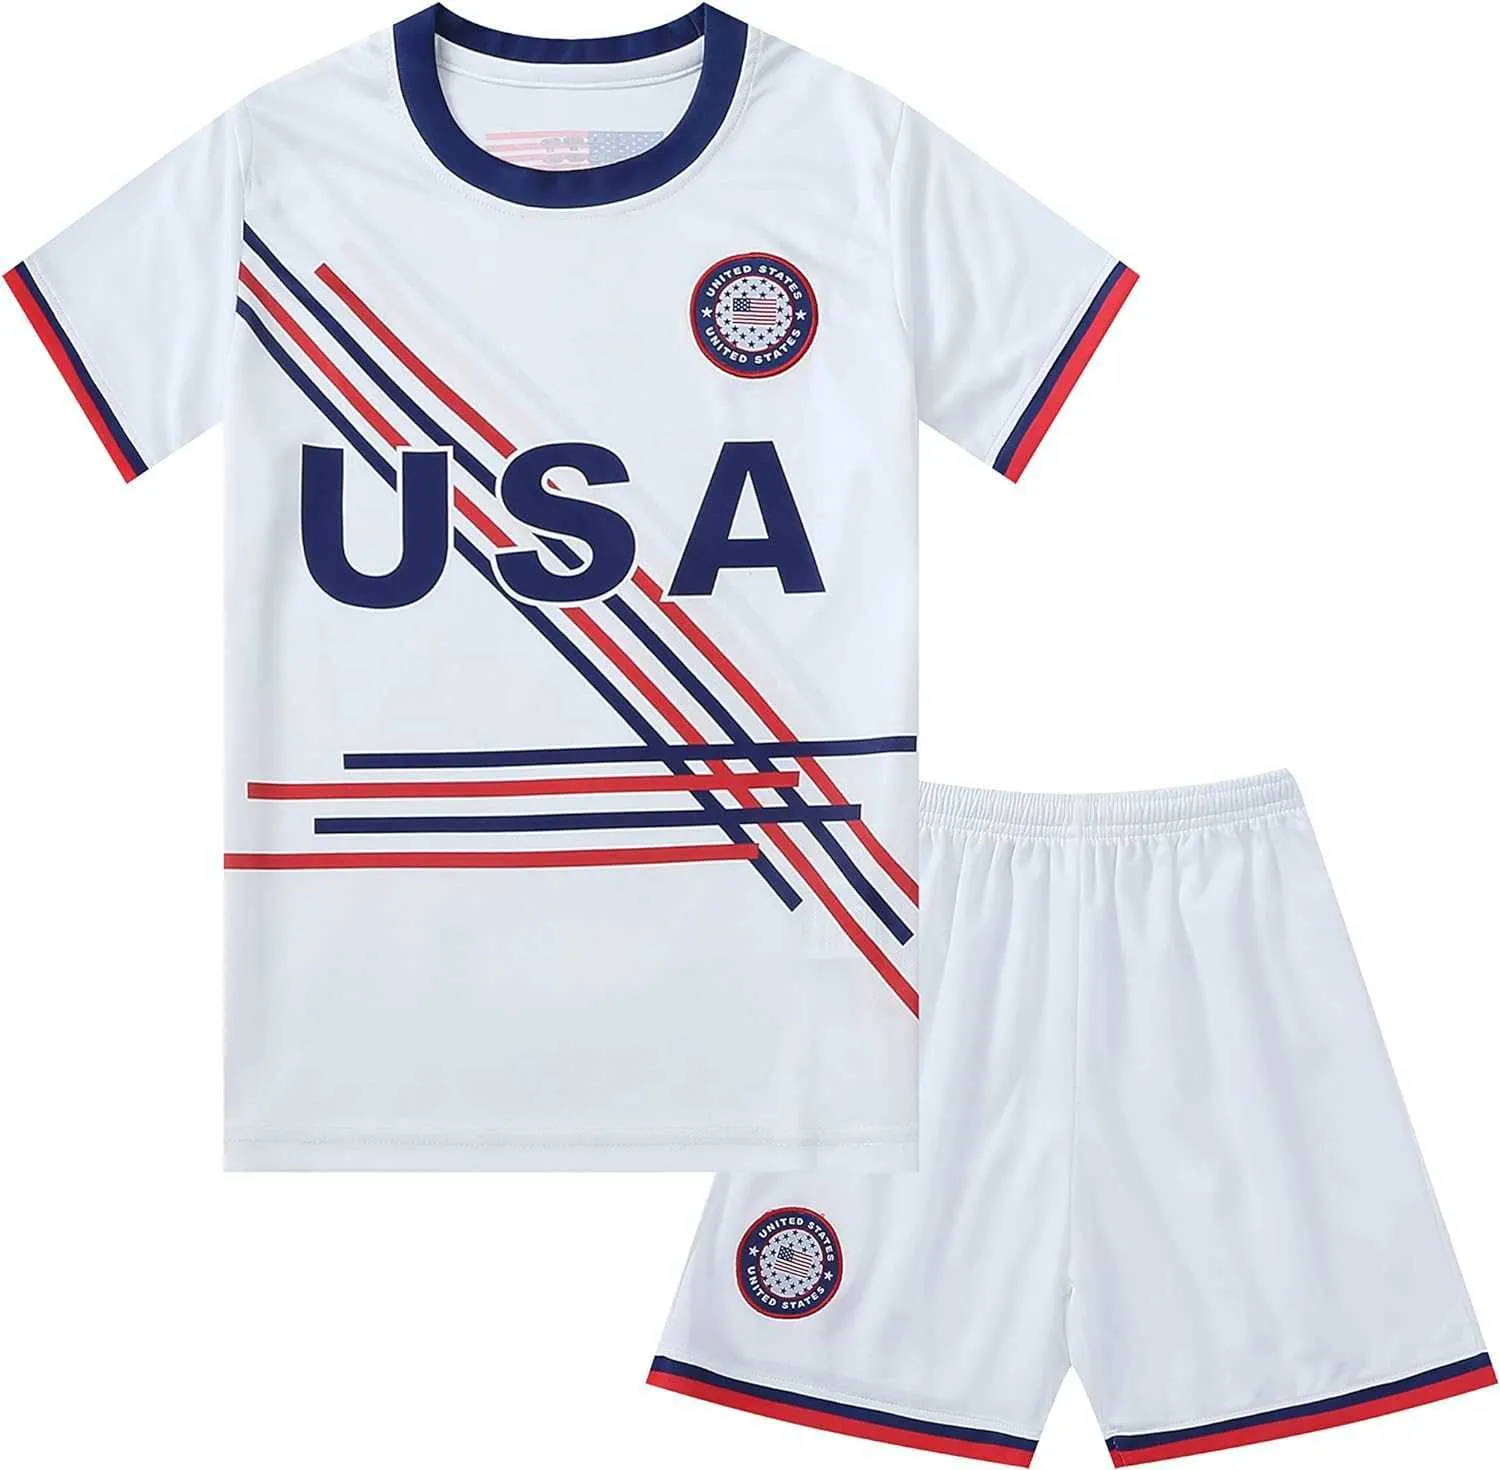 Мужские футболки сборной США по американскому футболу, баскетболу, комплекту спортивных рубашек для мальчиков и девочек Asso